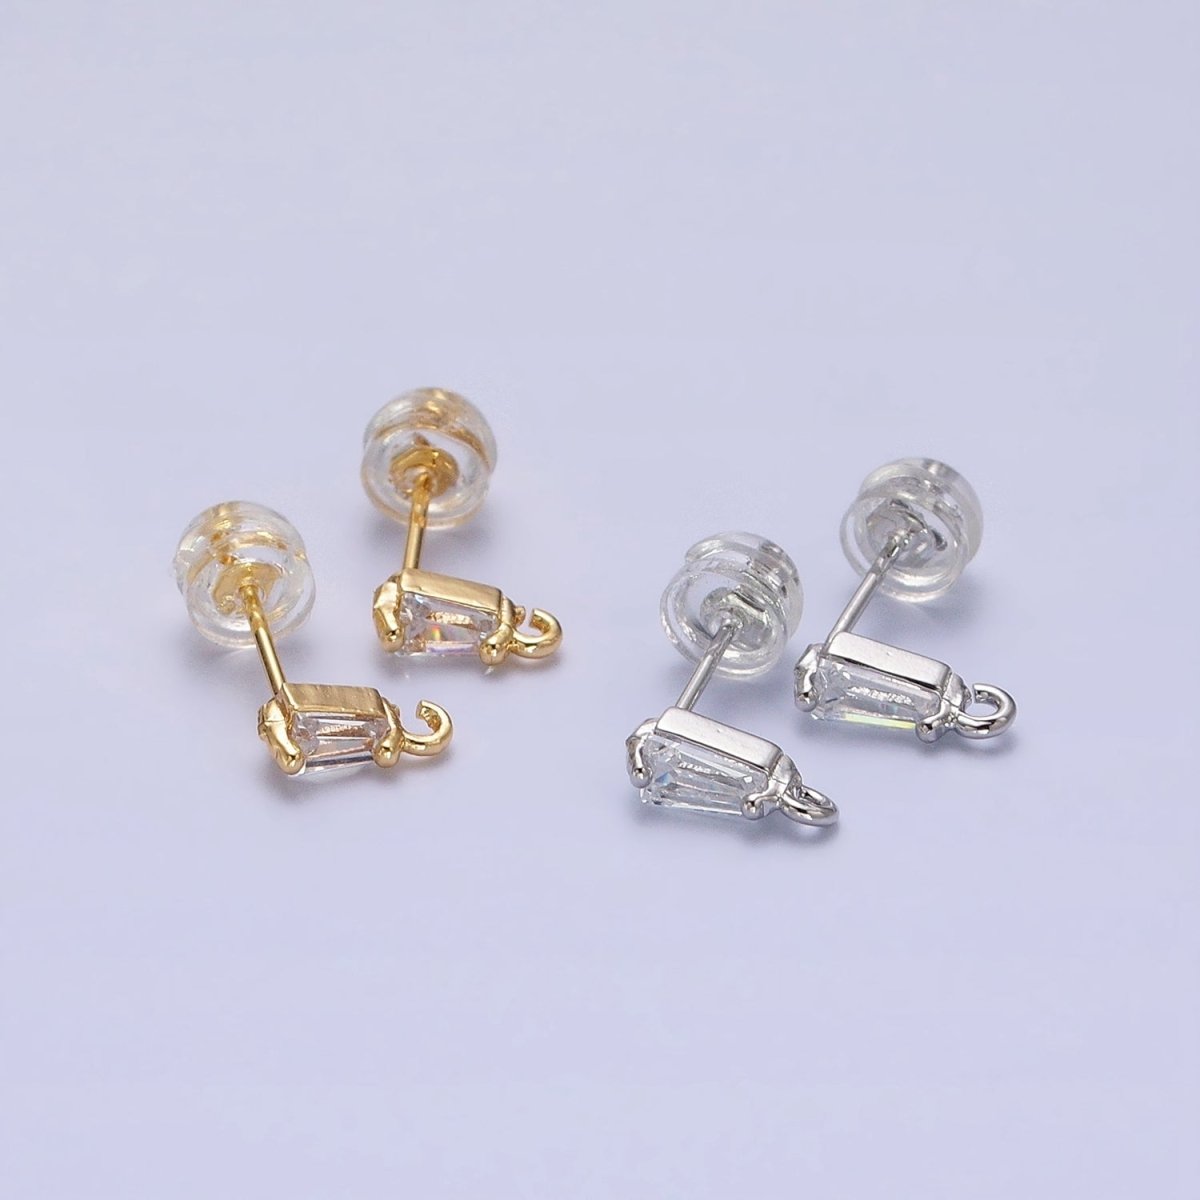 Mini Baguette Cut CZ Diamond Stud Earring Gold Earring Post with Open Link for Earring Supply Z-180 Z-181 - DLUXCA